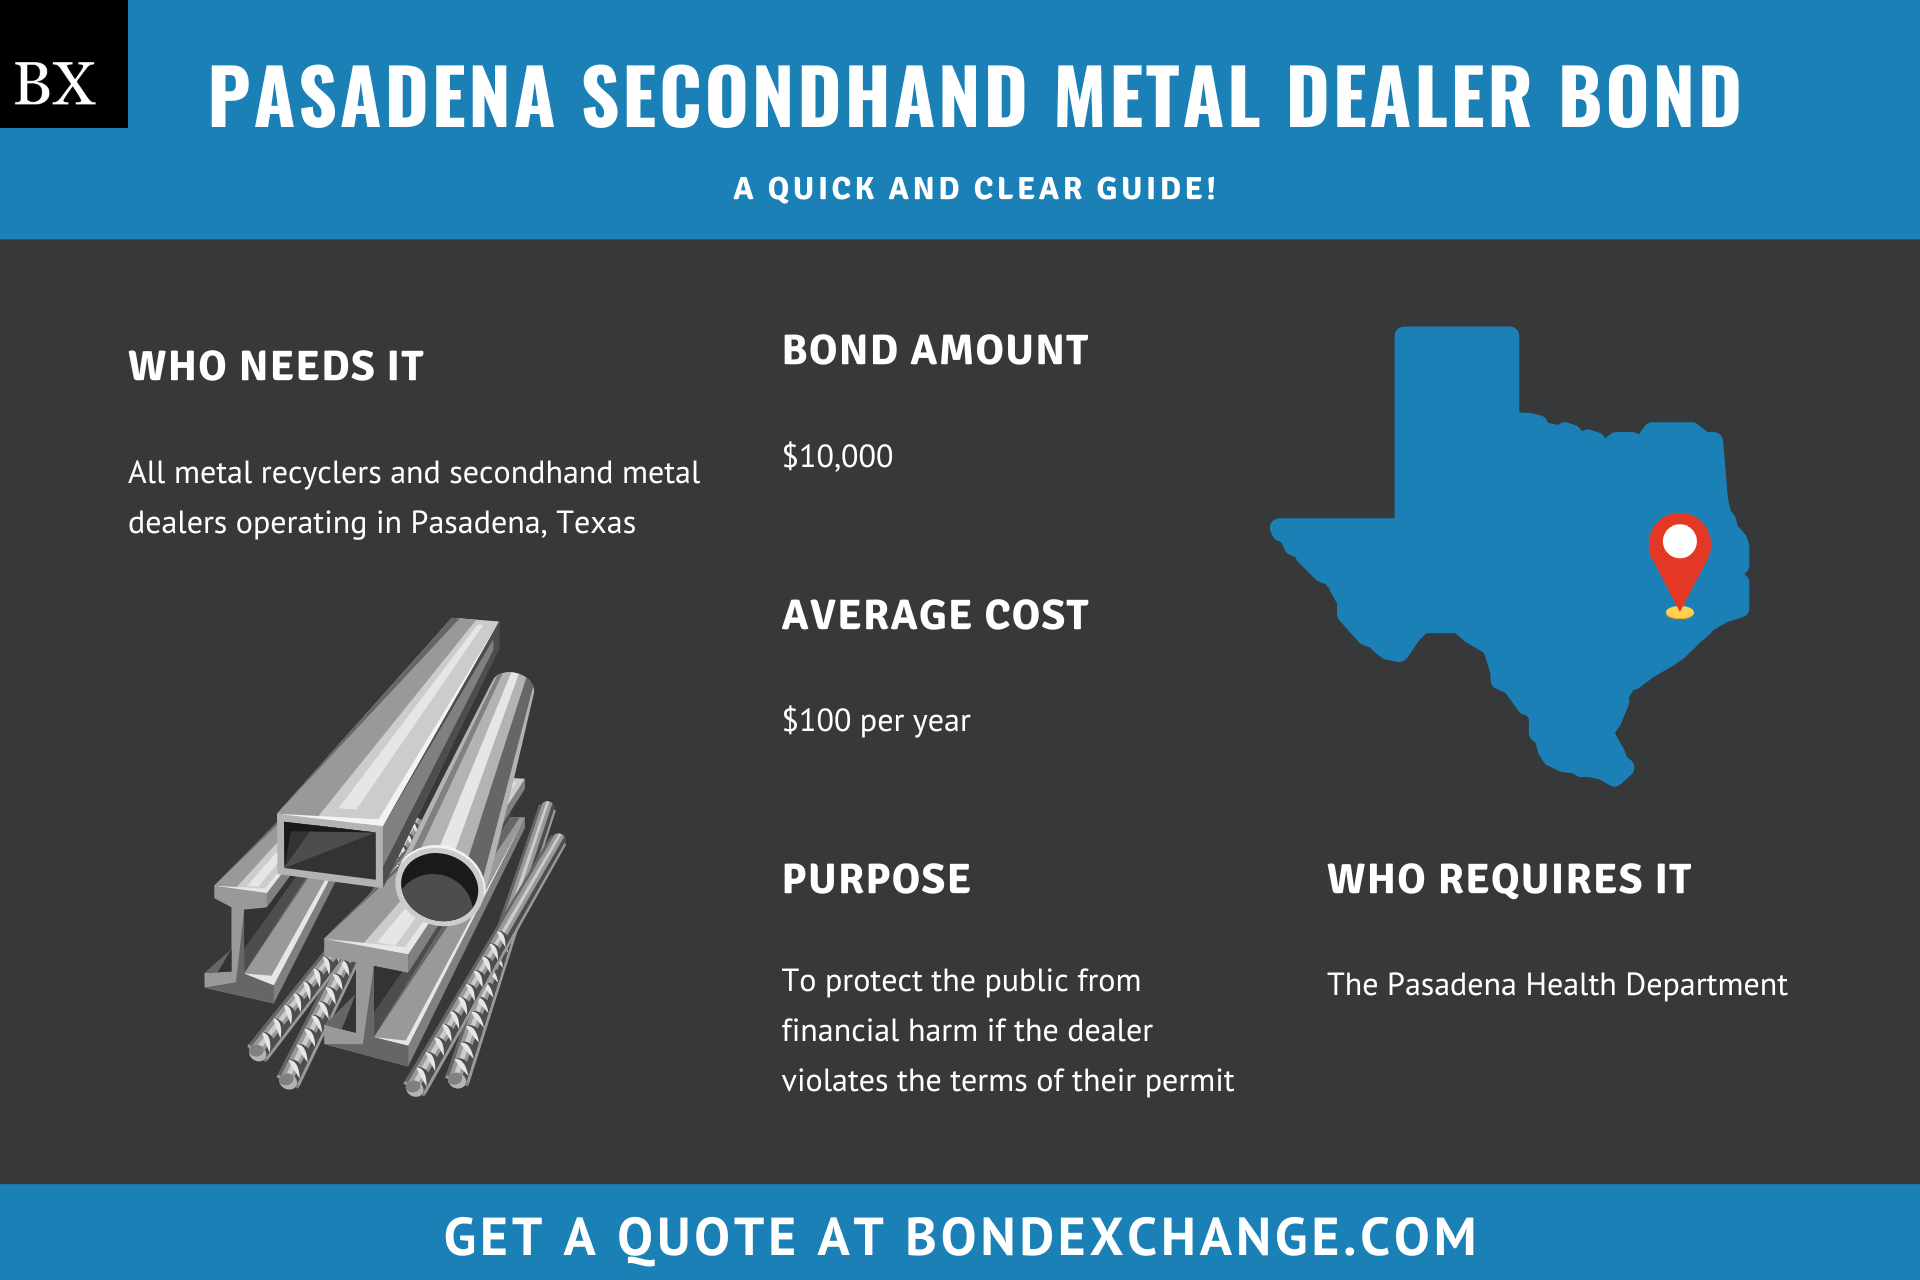 Pasadena Metal Recycler/Secondhand Metal Dealer Bond